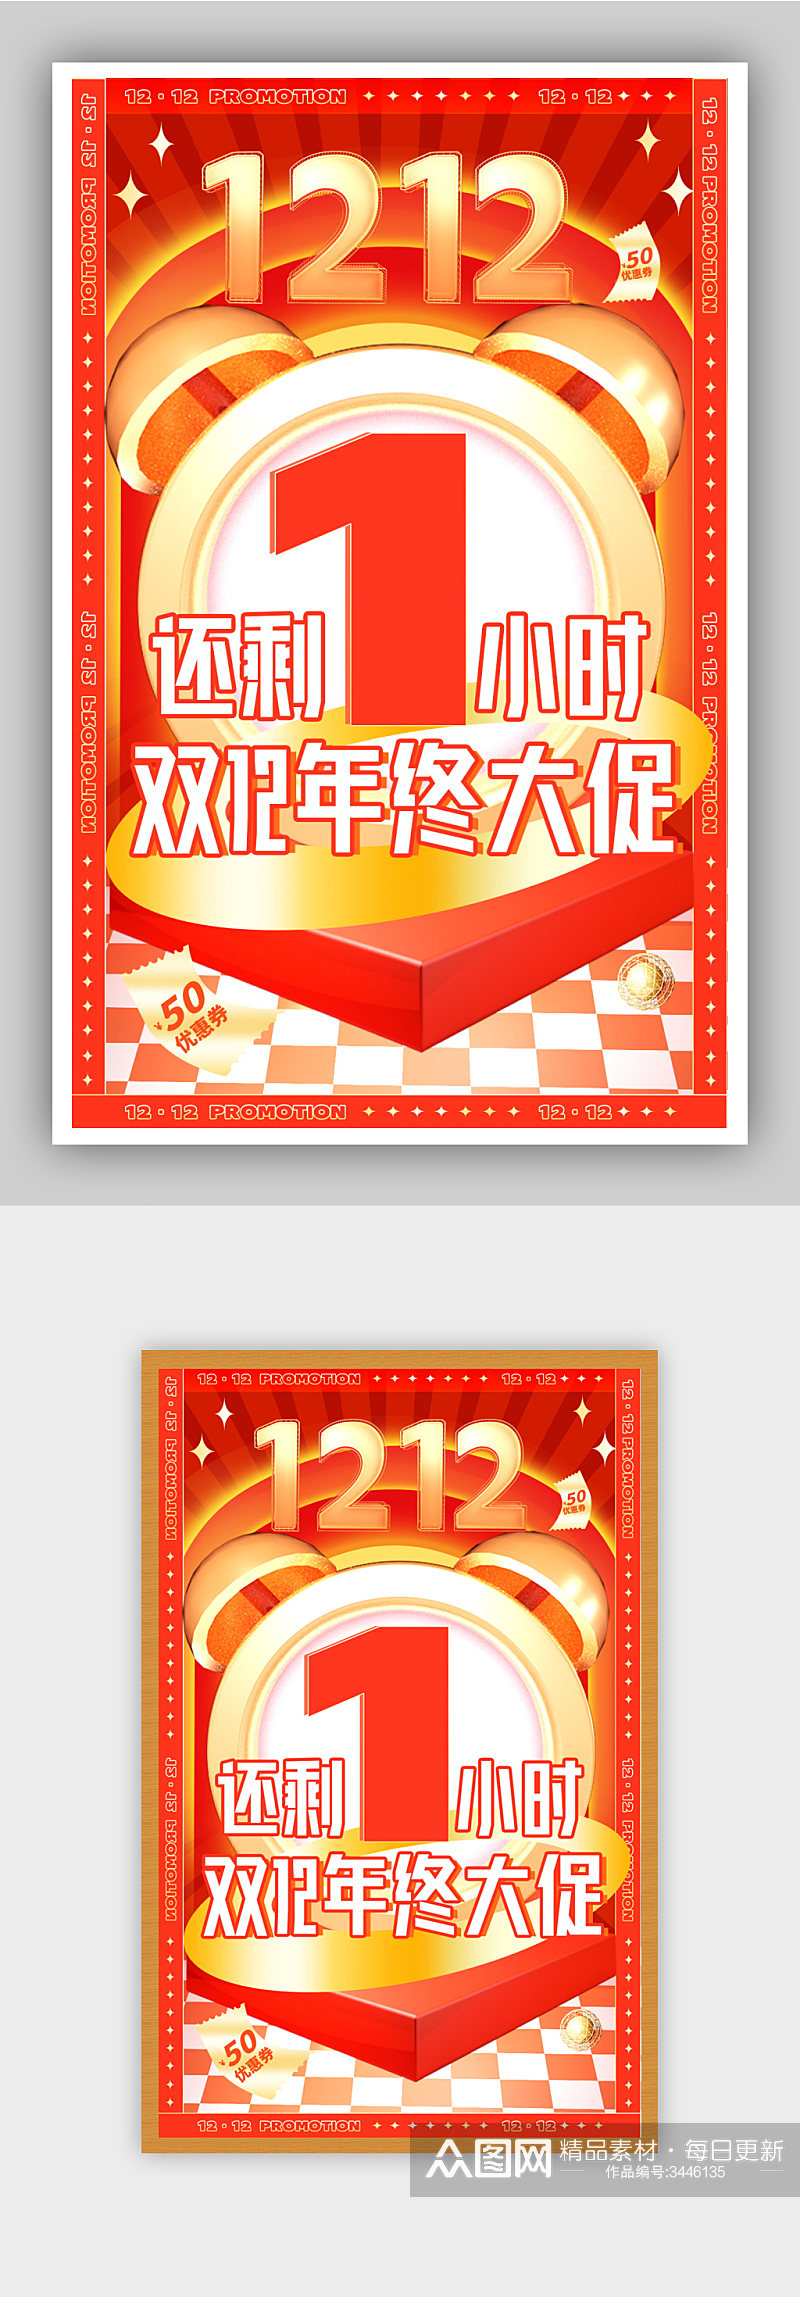 双12大促红色节日喜庆全屏直播倒计时海报素材